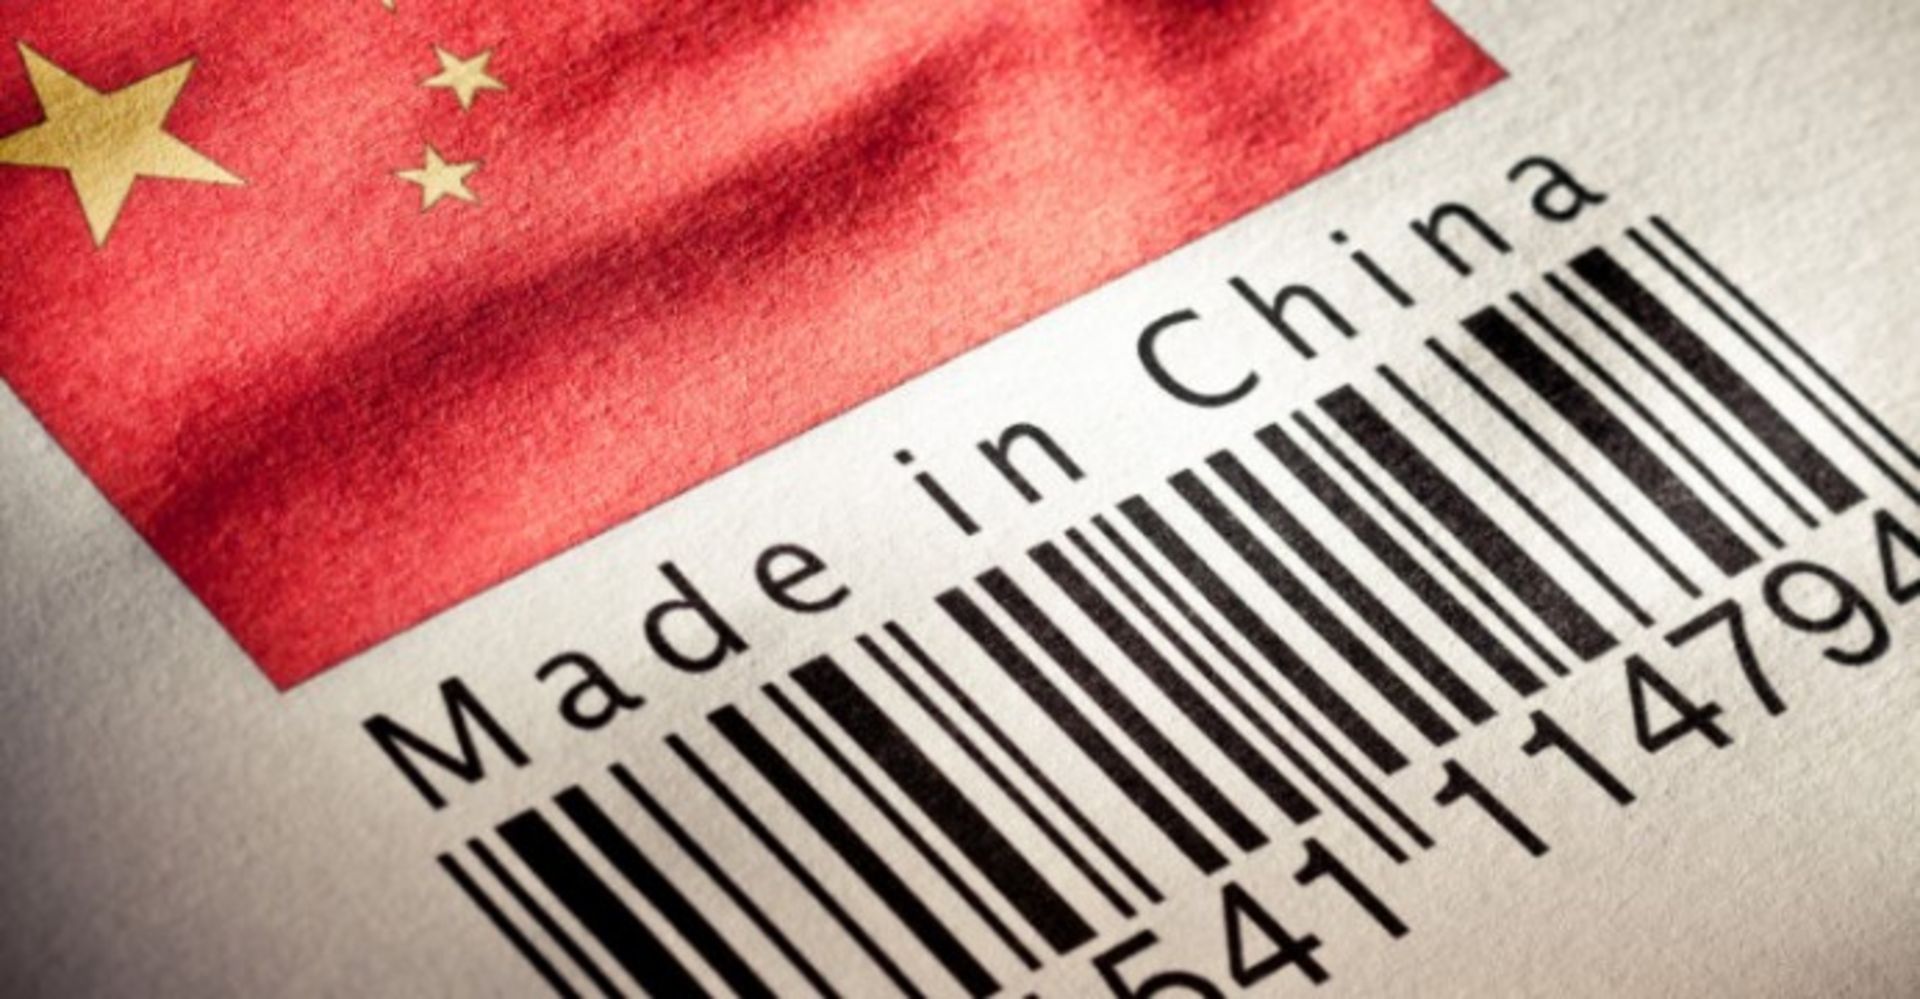 مرجع متخصصين ايران ساخت چين / made in china